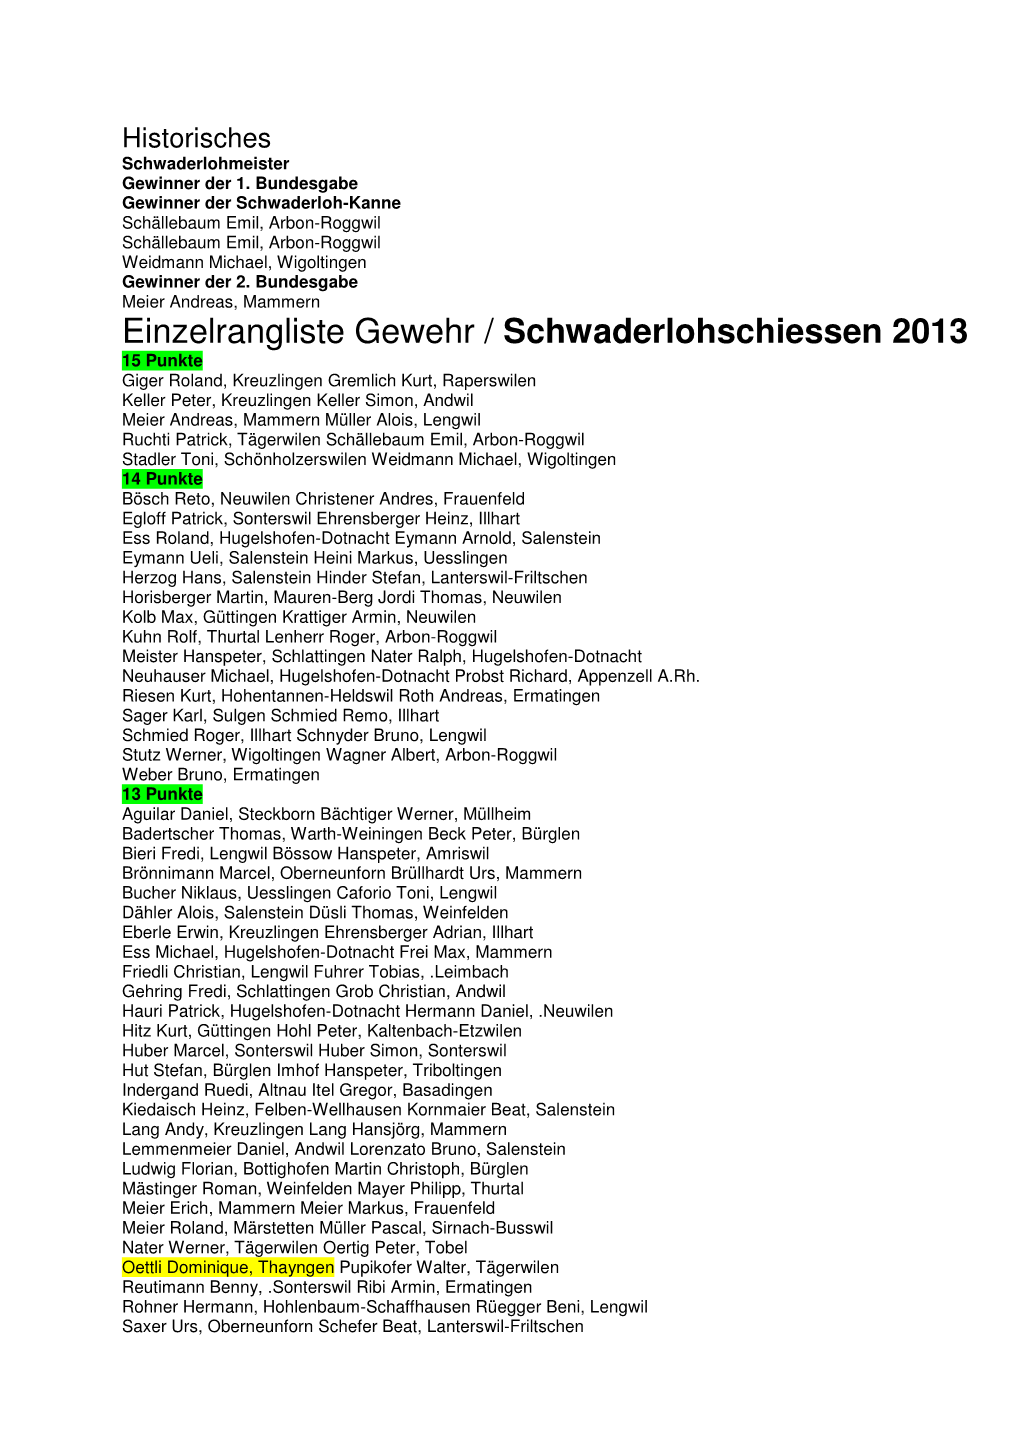 Einzelrangliste Gewehr / Schwaderlohschiessen 2013